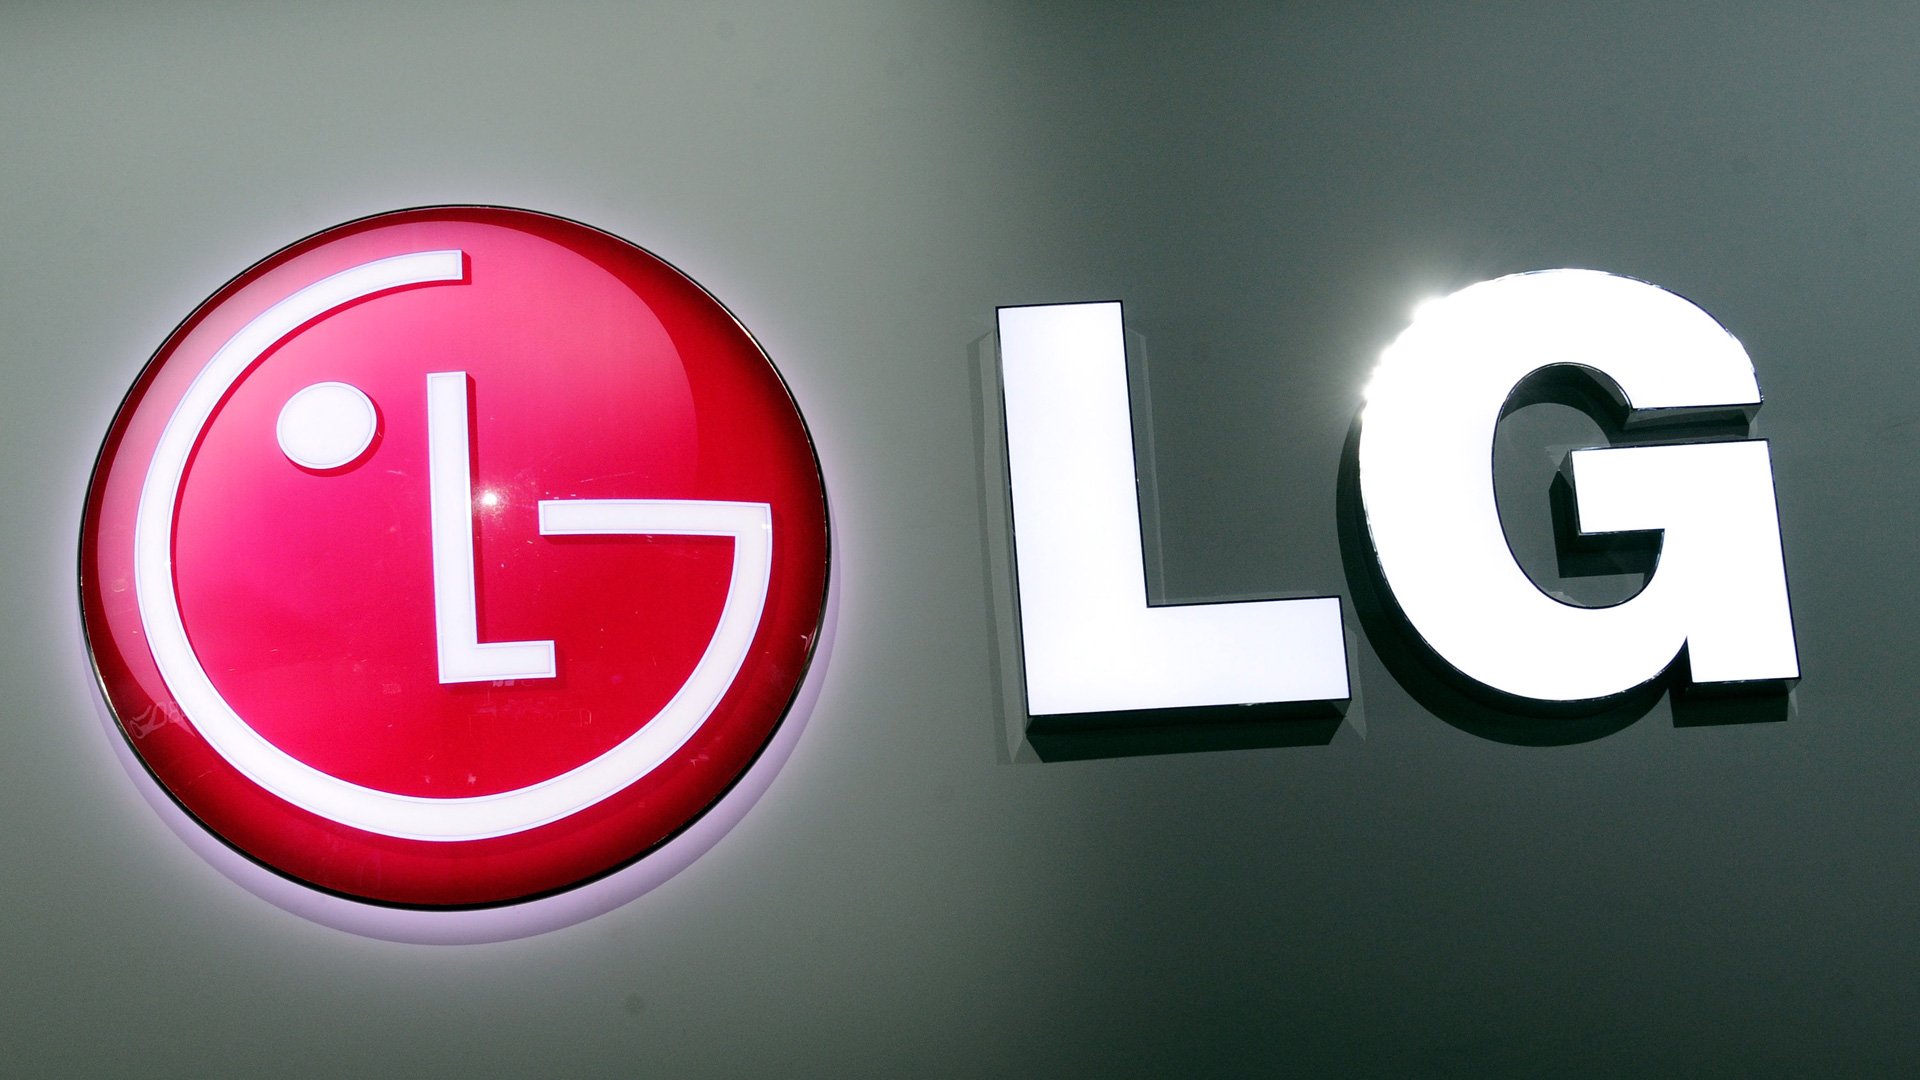 LG - Logo